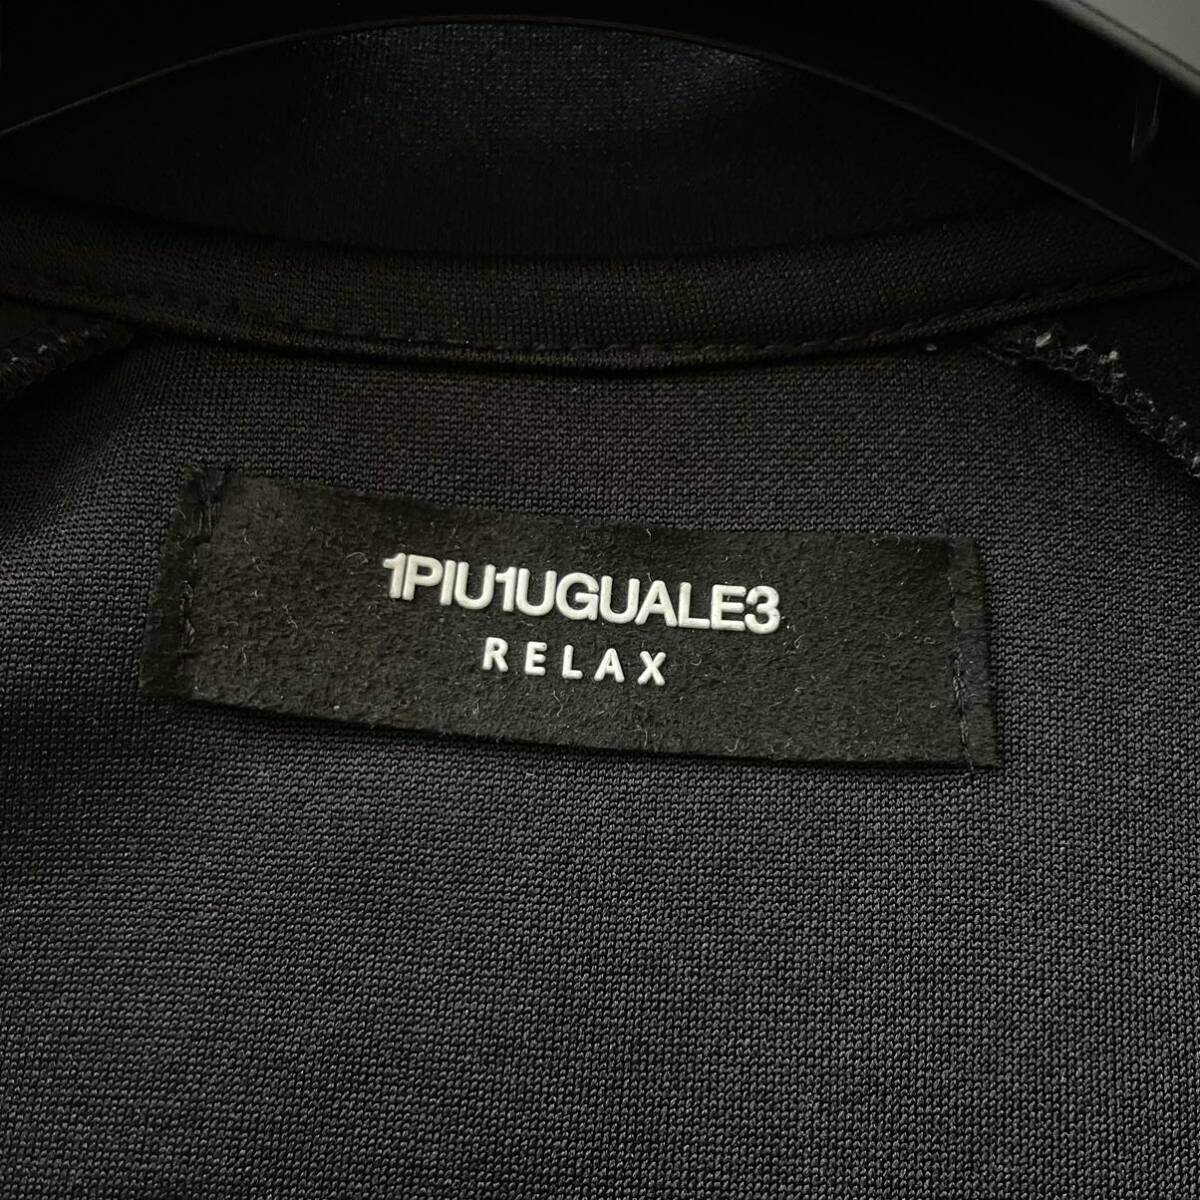  превосходный товар /L размер * 1PIU1UGUALE3 RELAXunopiuunoug.-retore спортивная куртка джерси блузон боковой Logo линия черный чёрный 